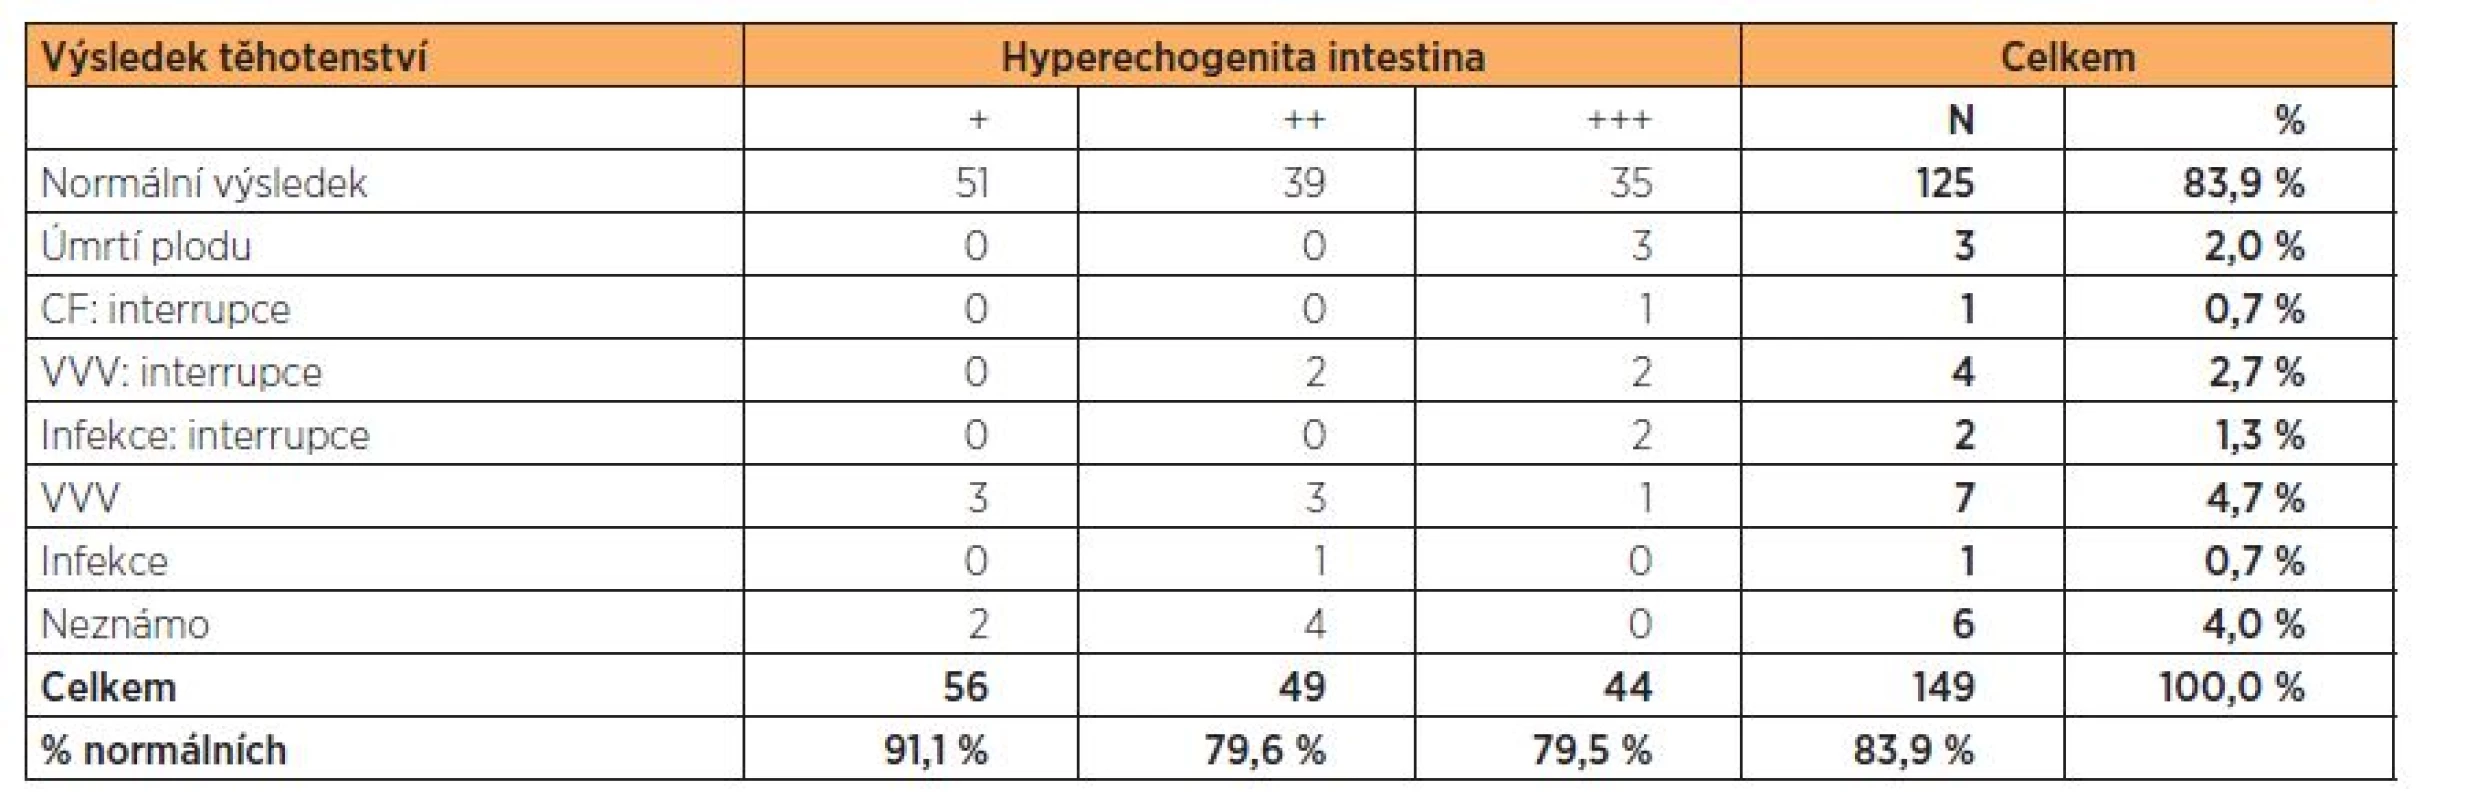 Výsledek těhotenství podle stupně hyperechogenity ve 2. trimestru